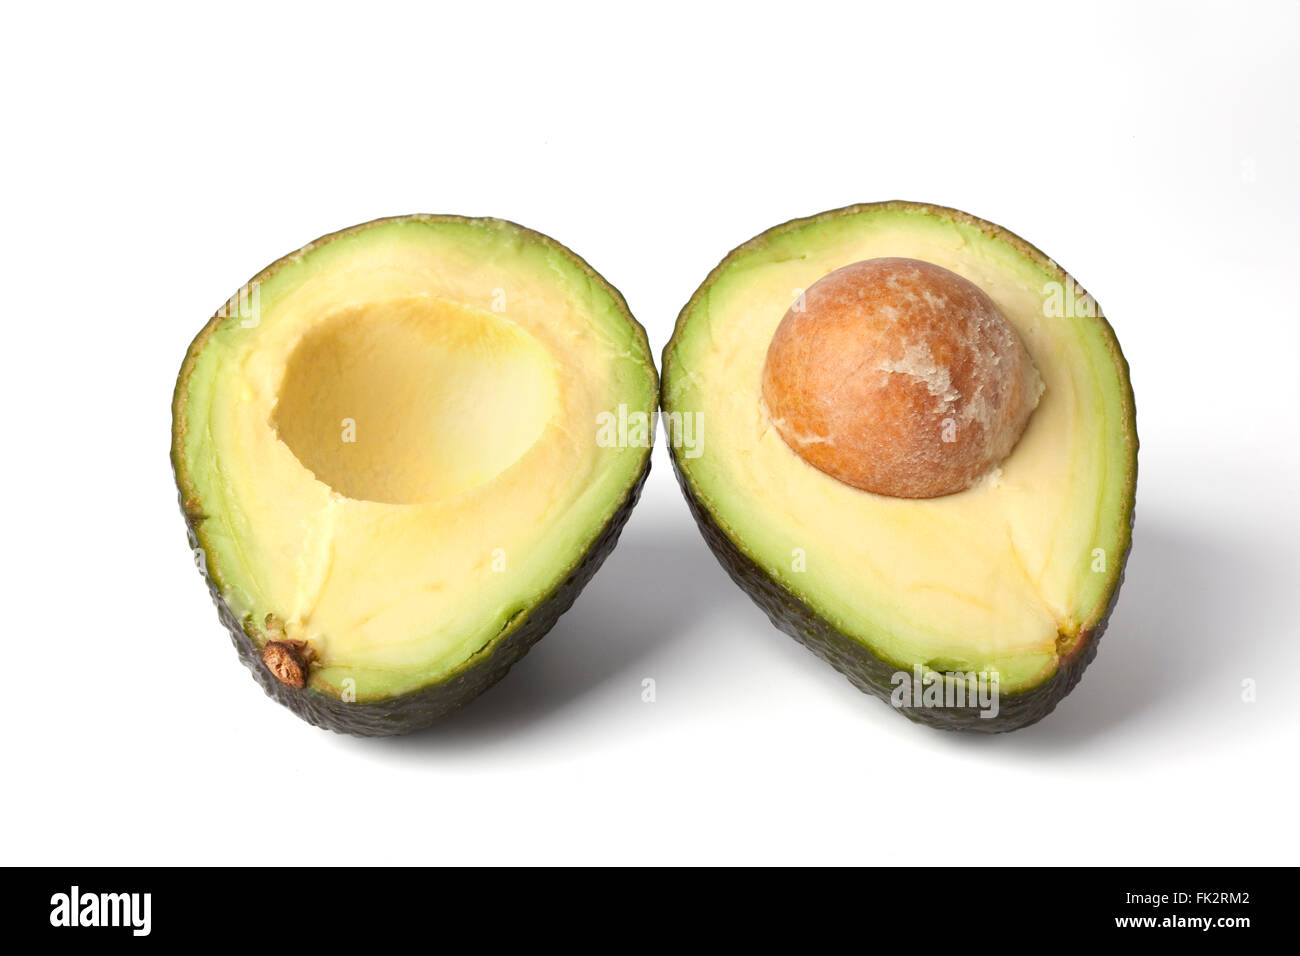 Fresh avocado cut into two halves on white background Stock Photo